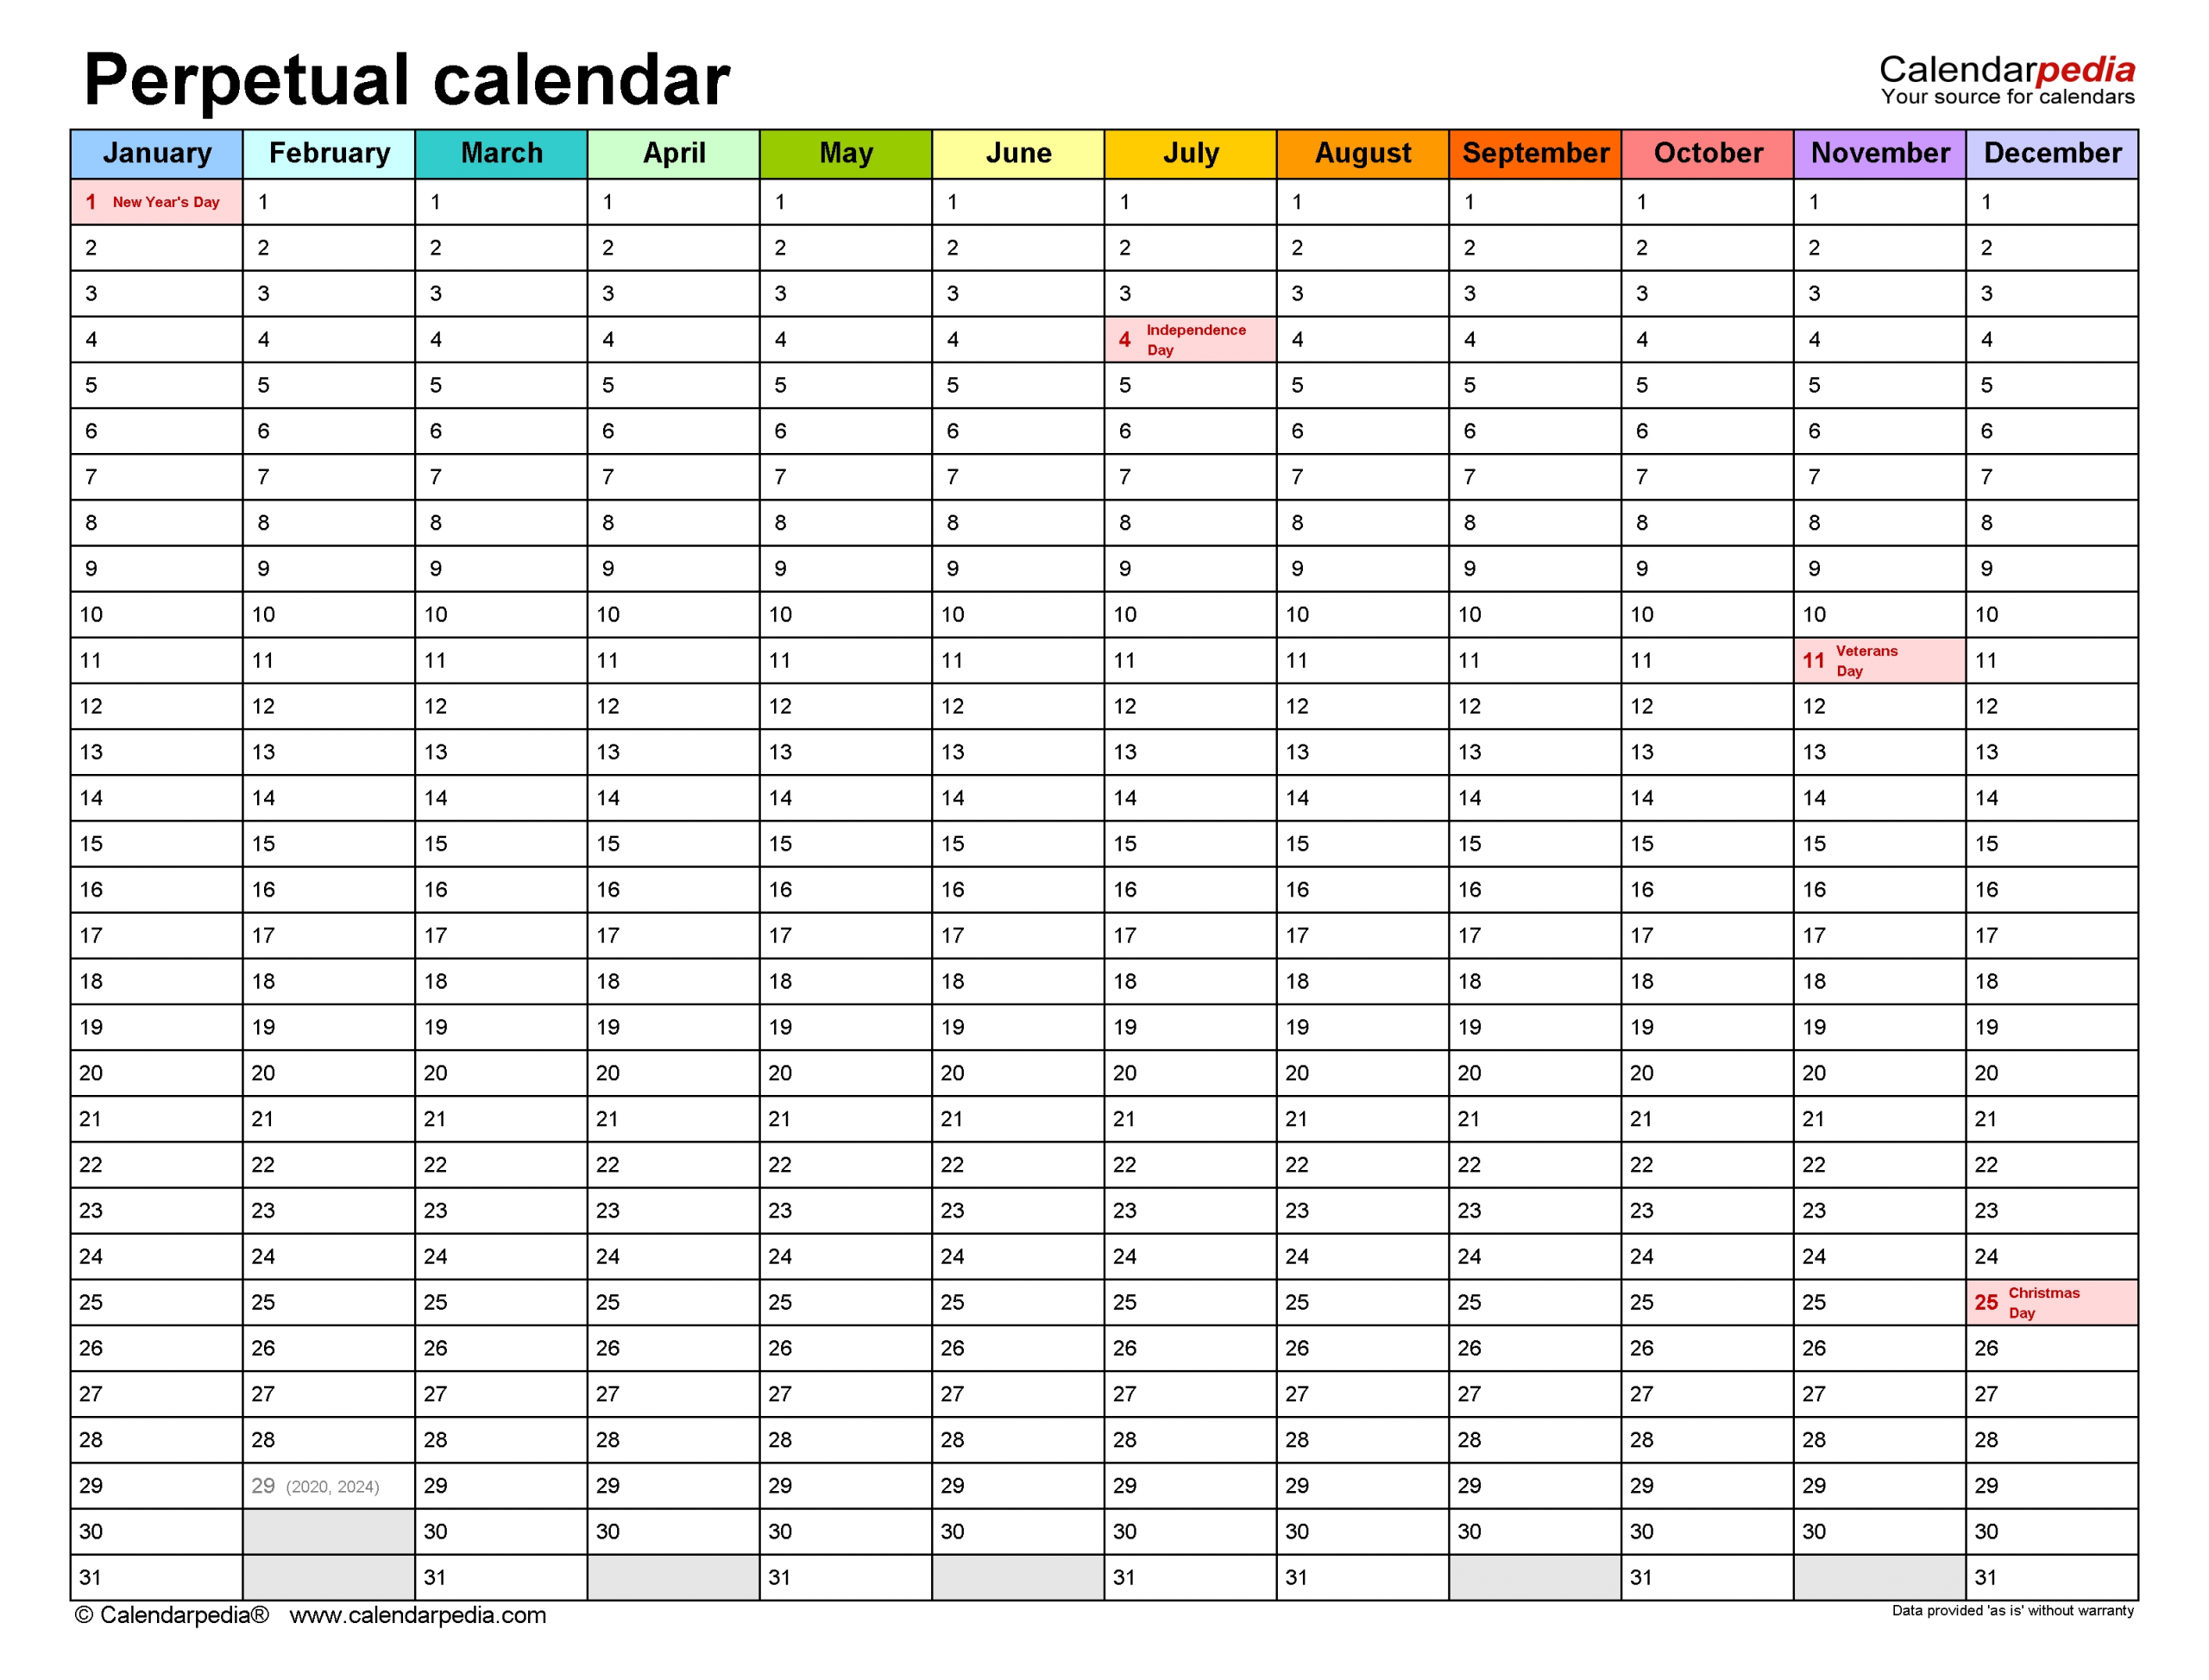 Perpetual Calendars - Free Printable Microsoft Word Templates regarding Free Printable Perpetual Calendar Template